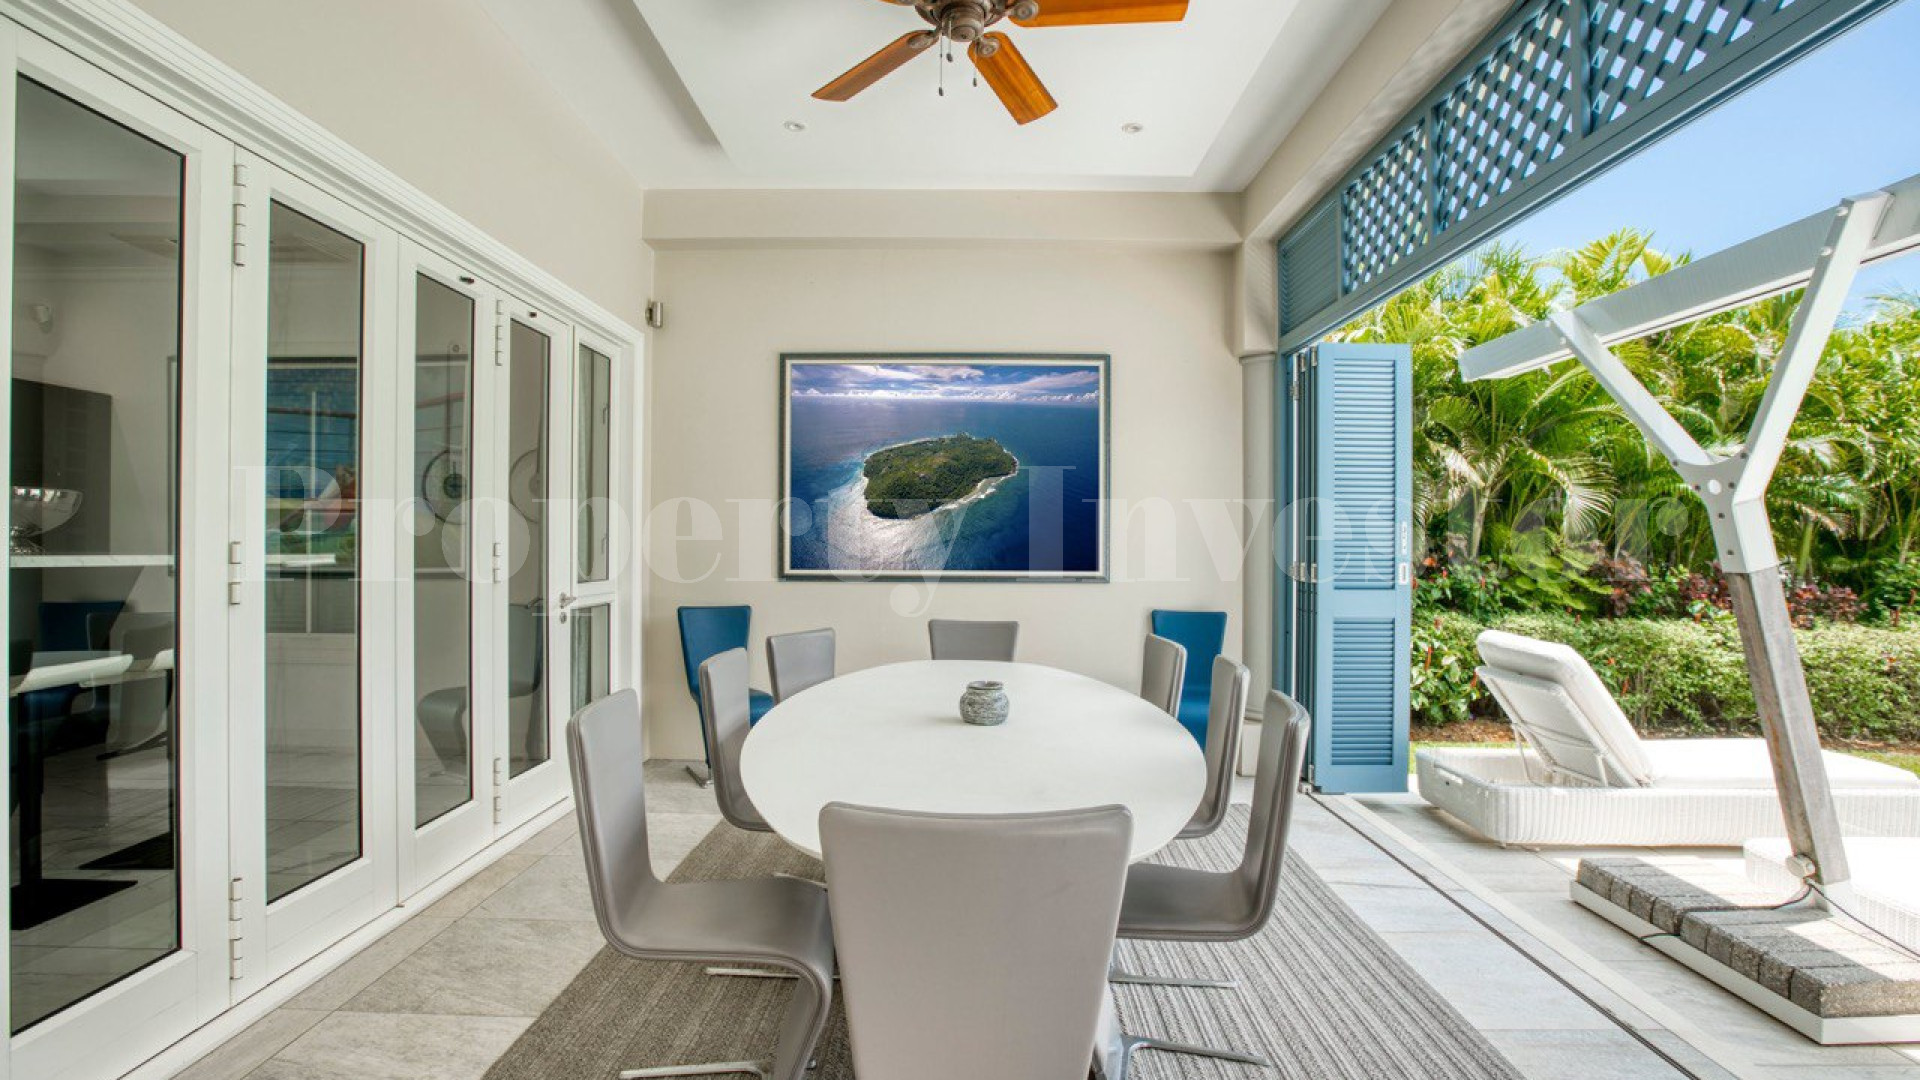 Дизайнерская роскошная вилла на 5 спален у воды со своим кинотеатром на острове Иден, Сейшелы